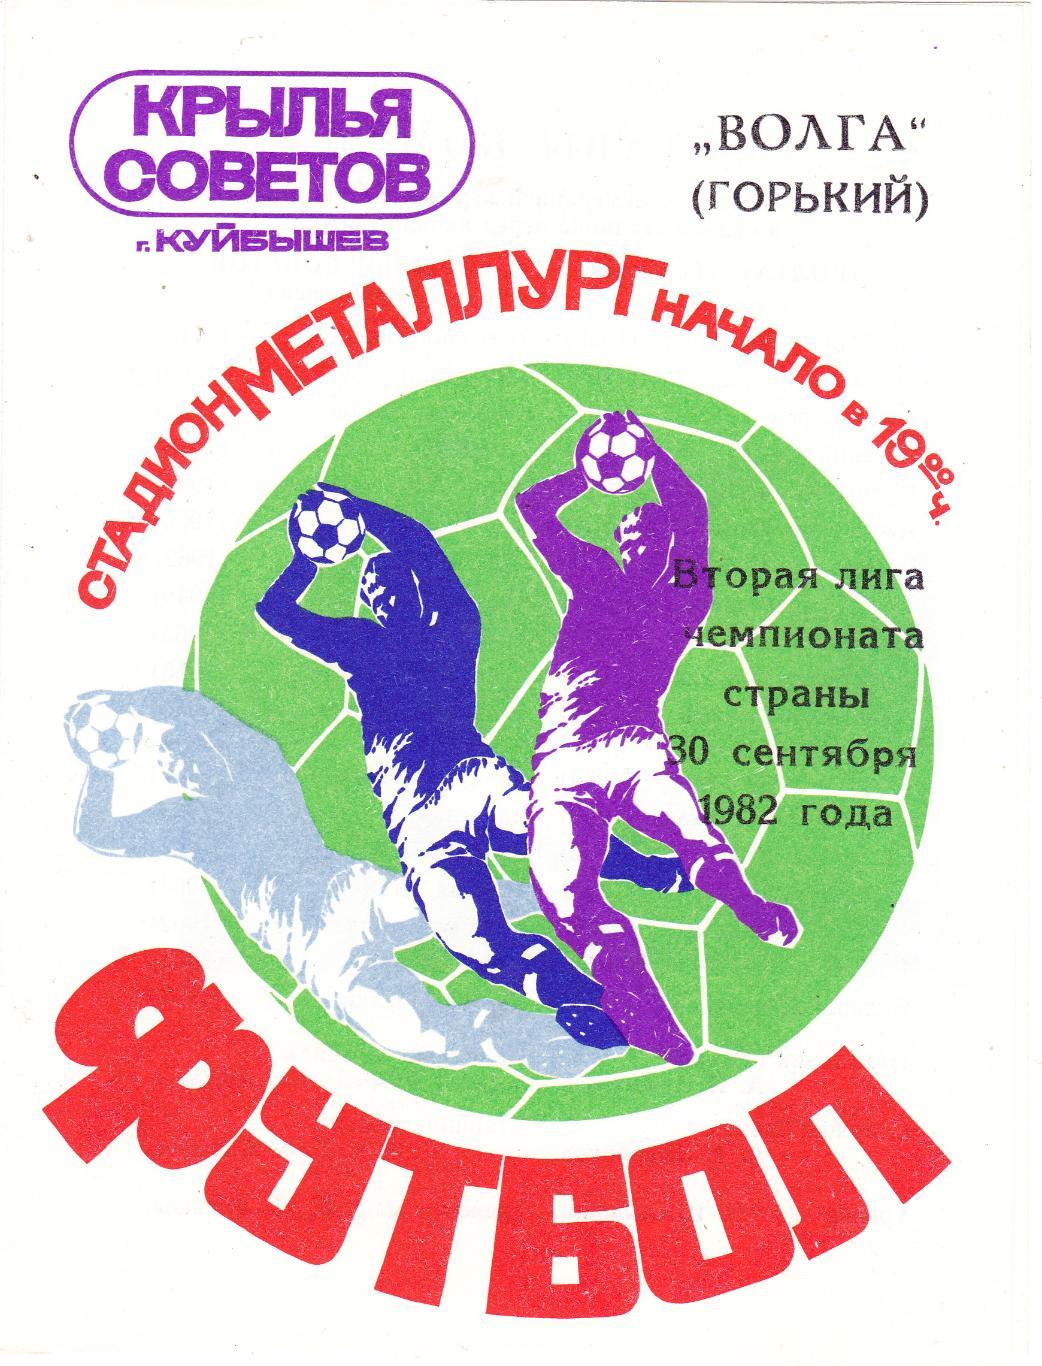 Крылья Советов (Куйбышев/Самара) - Волга (Горький) 30.09.1982